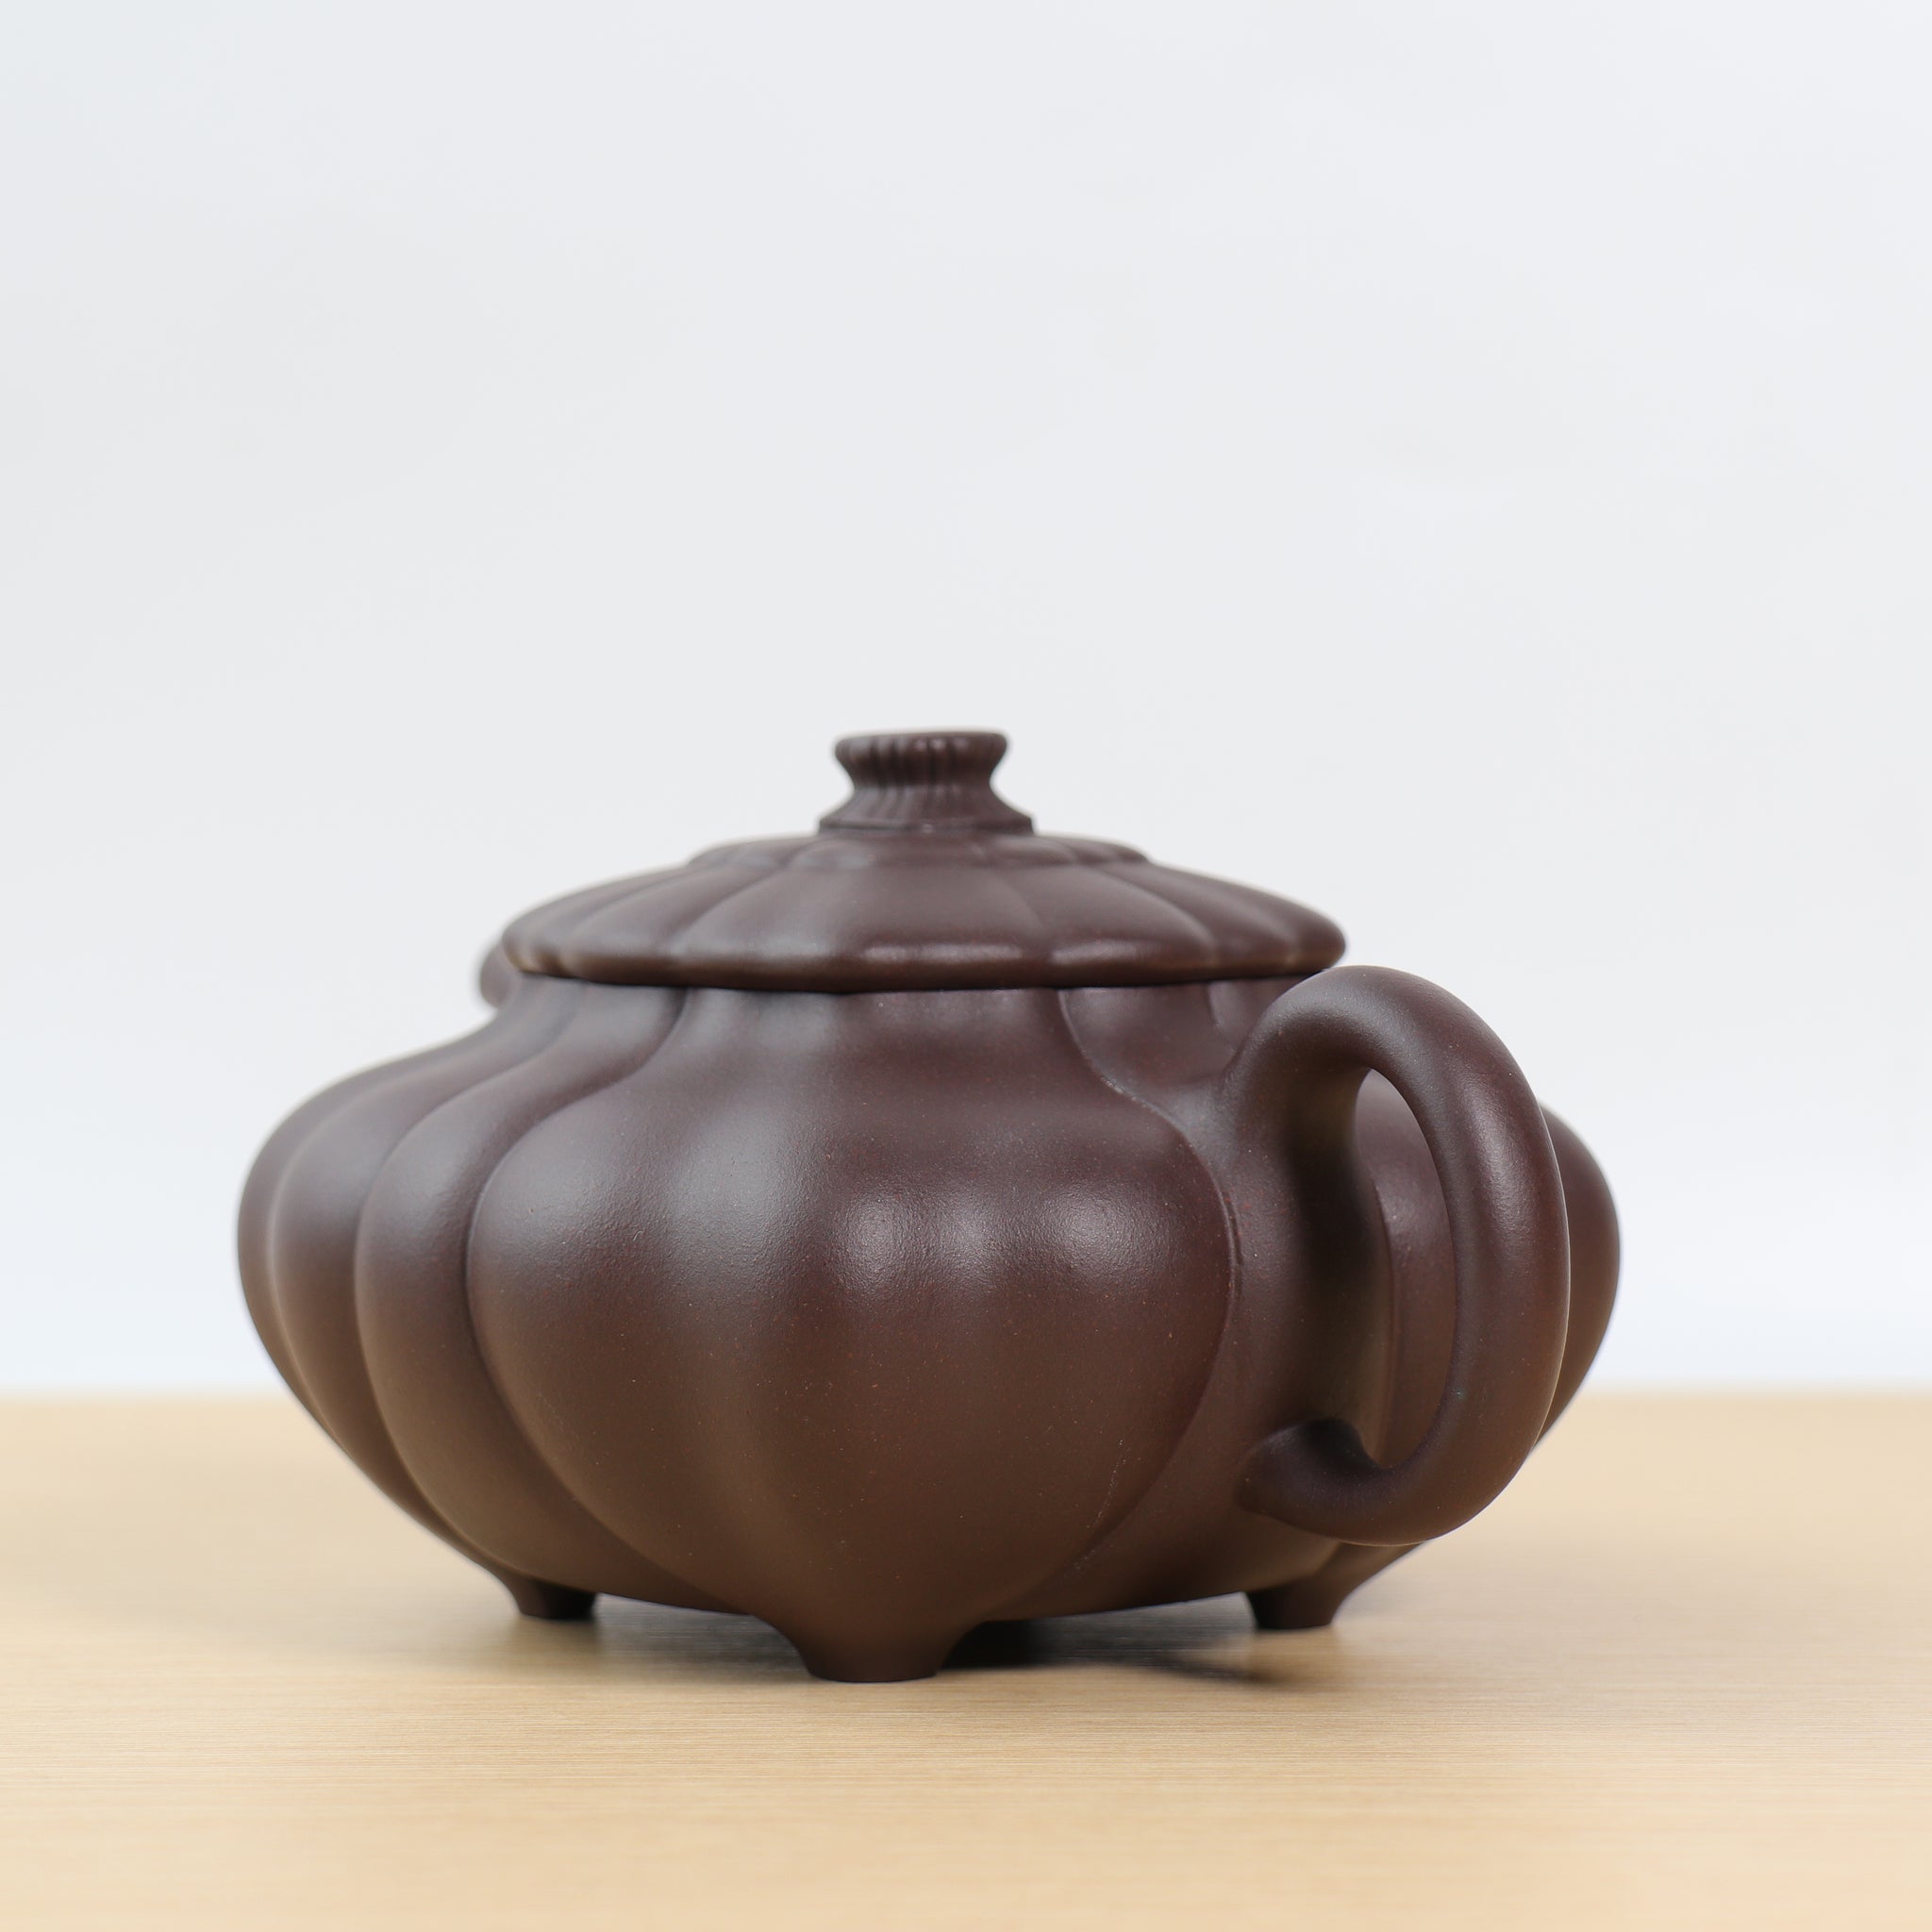 【筋紋傳爐】紫泥經典紫砂茶壺